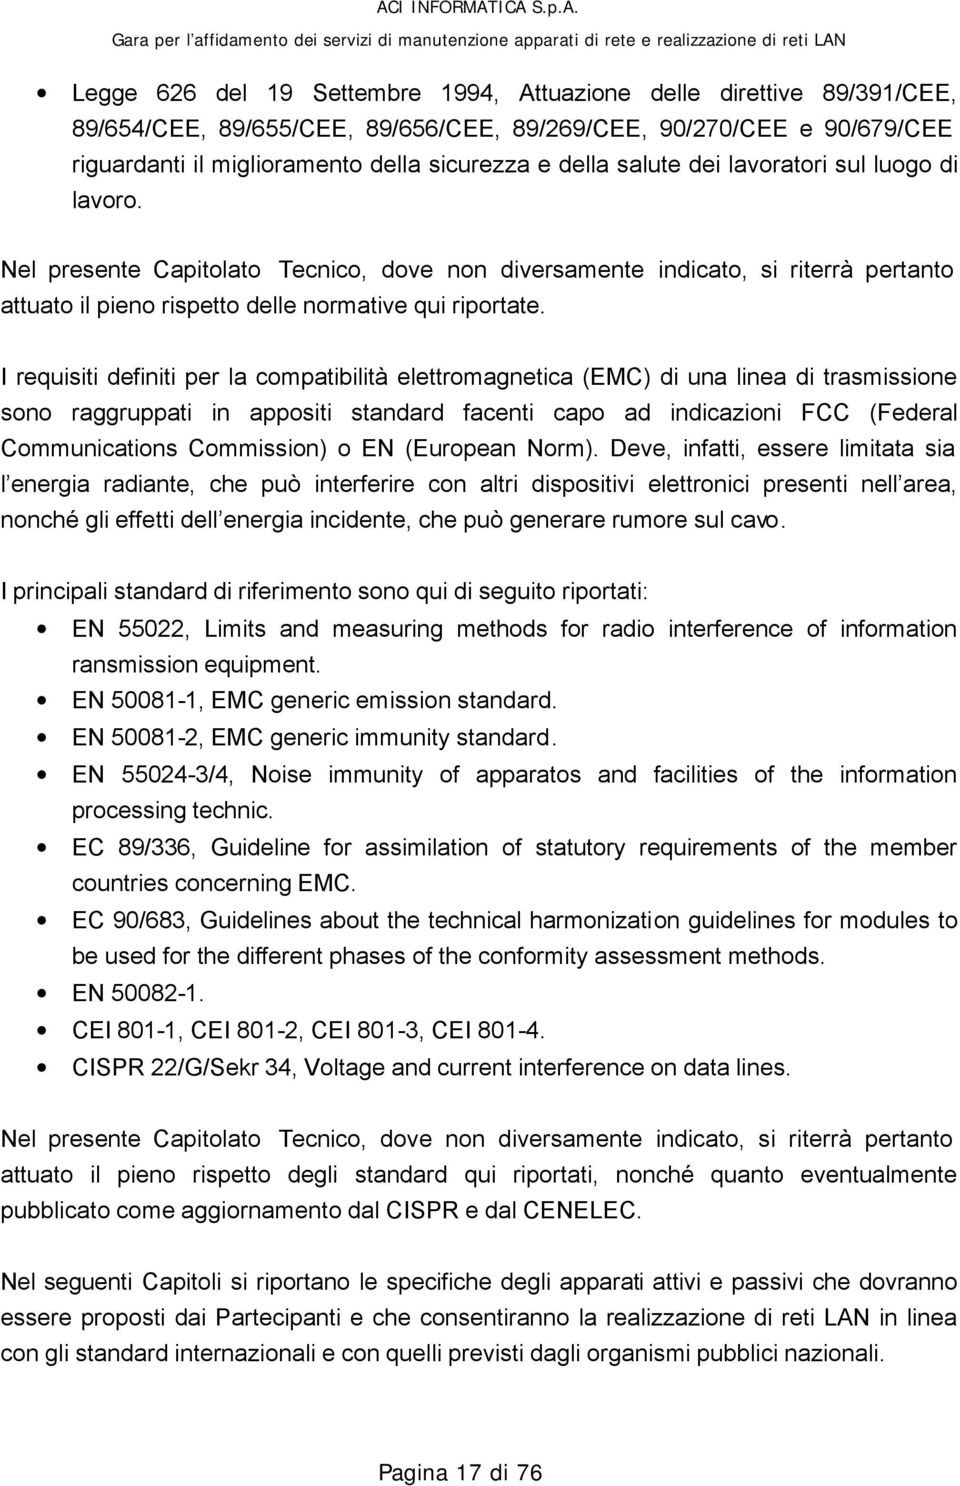 I requisiti definiti per la compatibilità elettromagnetica (EMC) di una linea di trasmissione sono raggruppati in appositi standard facenti capo ad indicazioni FCC (Federal Communications Commission)